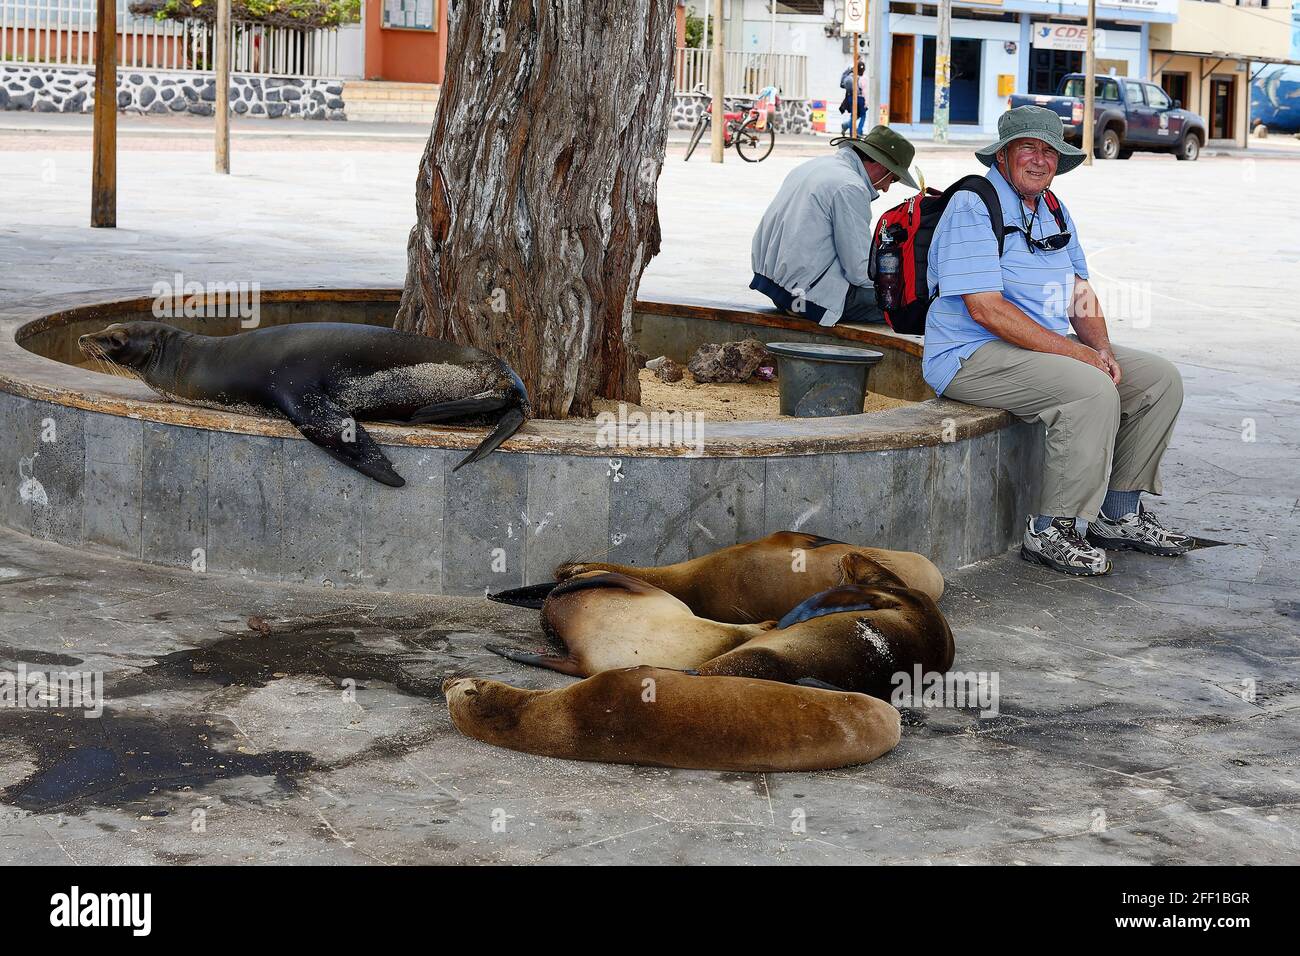 Escena de la calle; 5 leones marinos descansando; recinto de piedra circular bajo alrededor del árbol; hombres sentados; animales sin miedo; fauna marina; Sudamérica; Galápagos Foto de stock